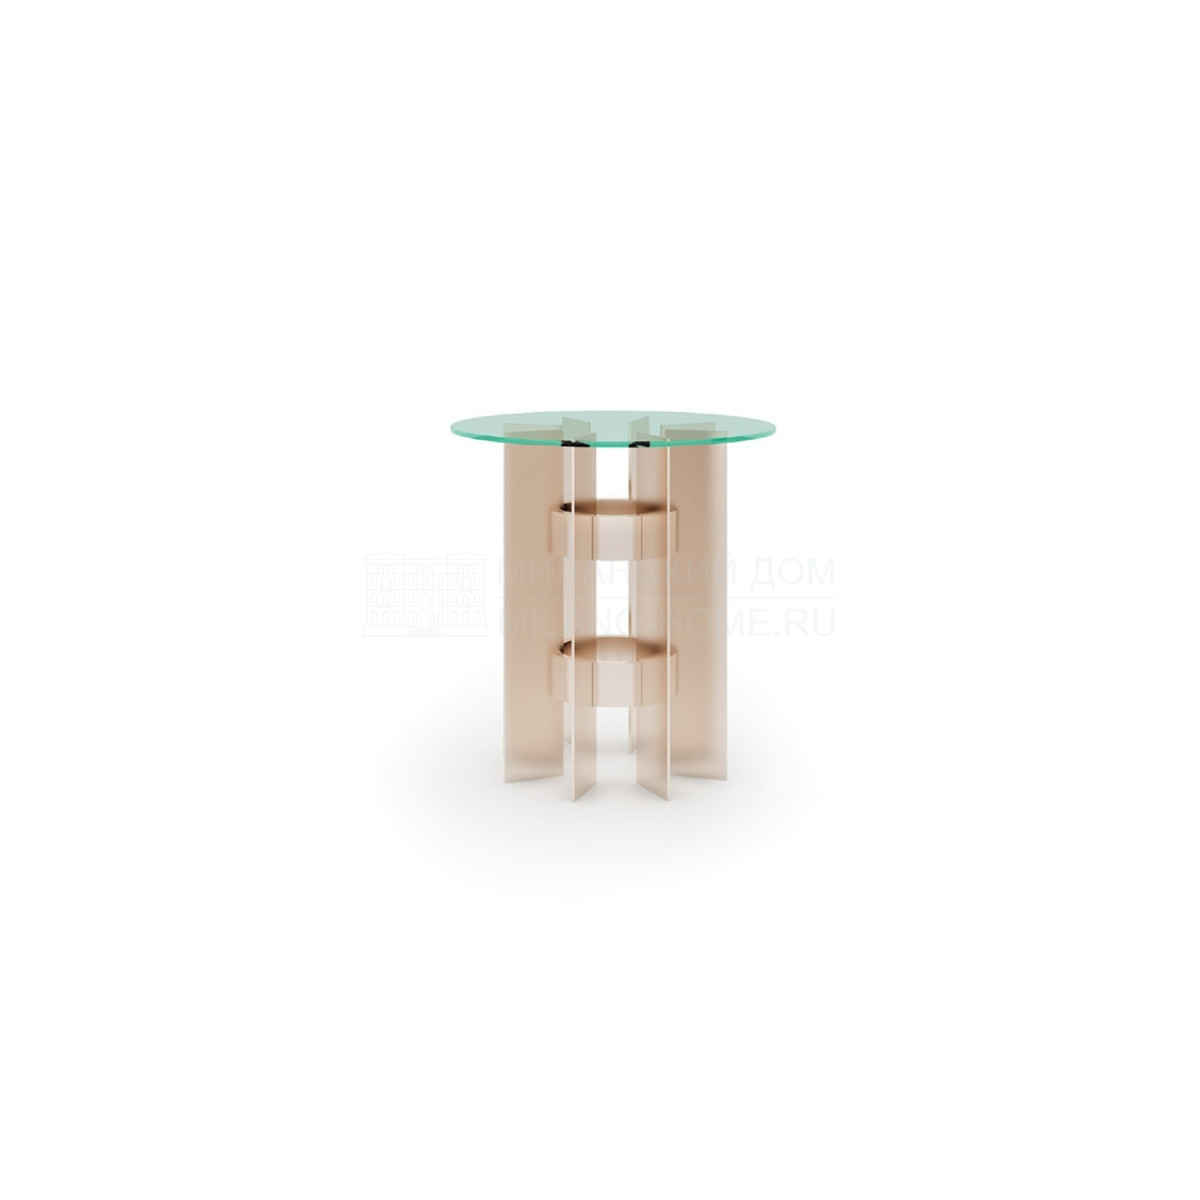 Кофейный столик Rockefeller side table из Италии фабрики ASNAGHI / INEDITO